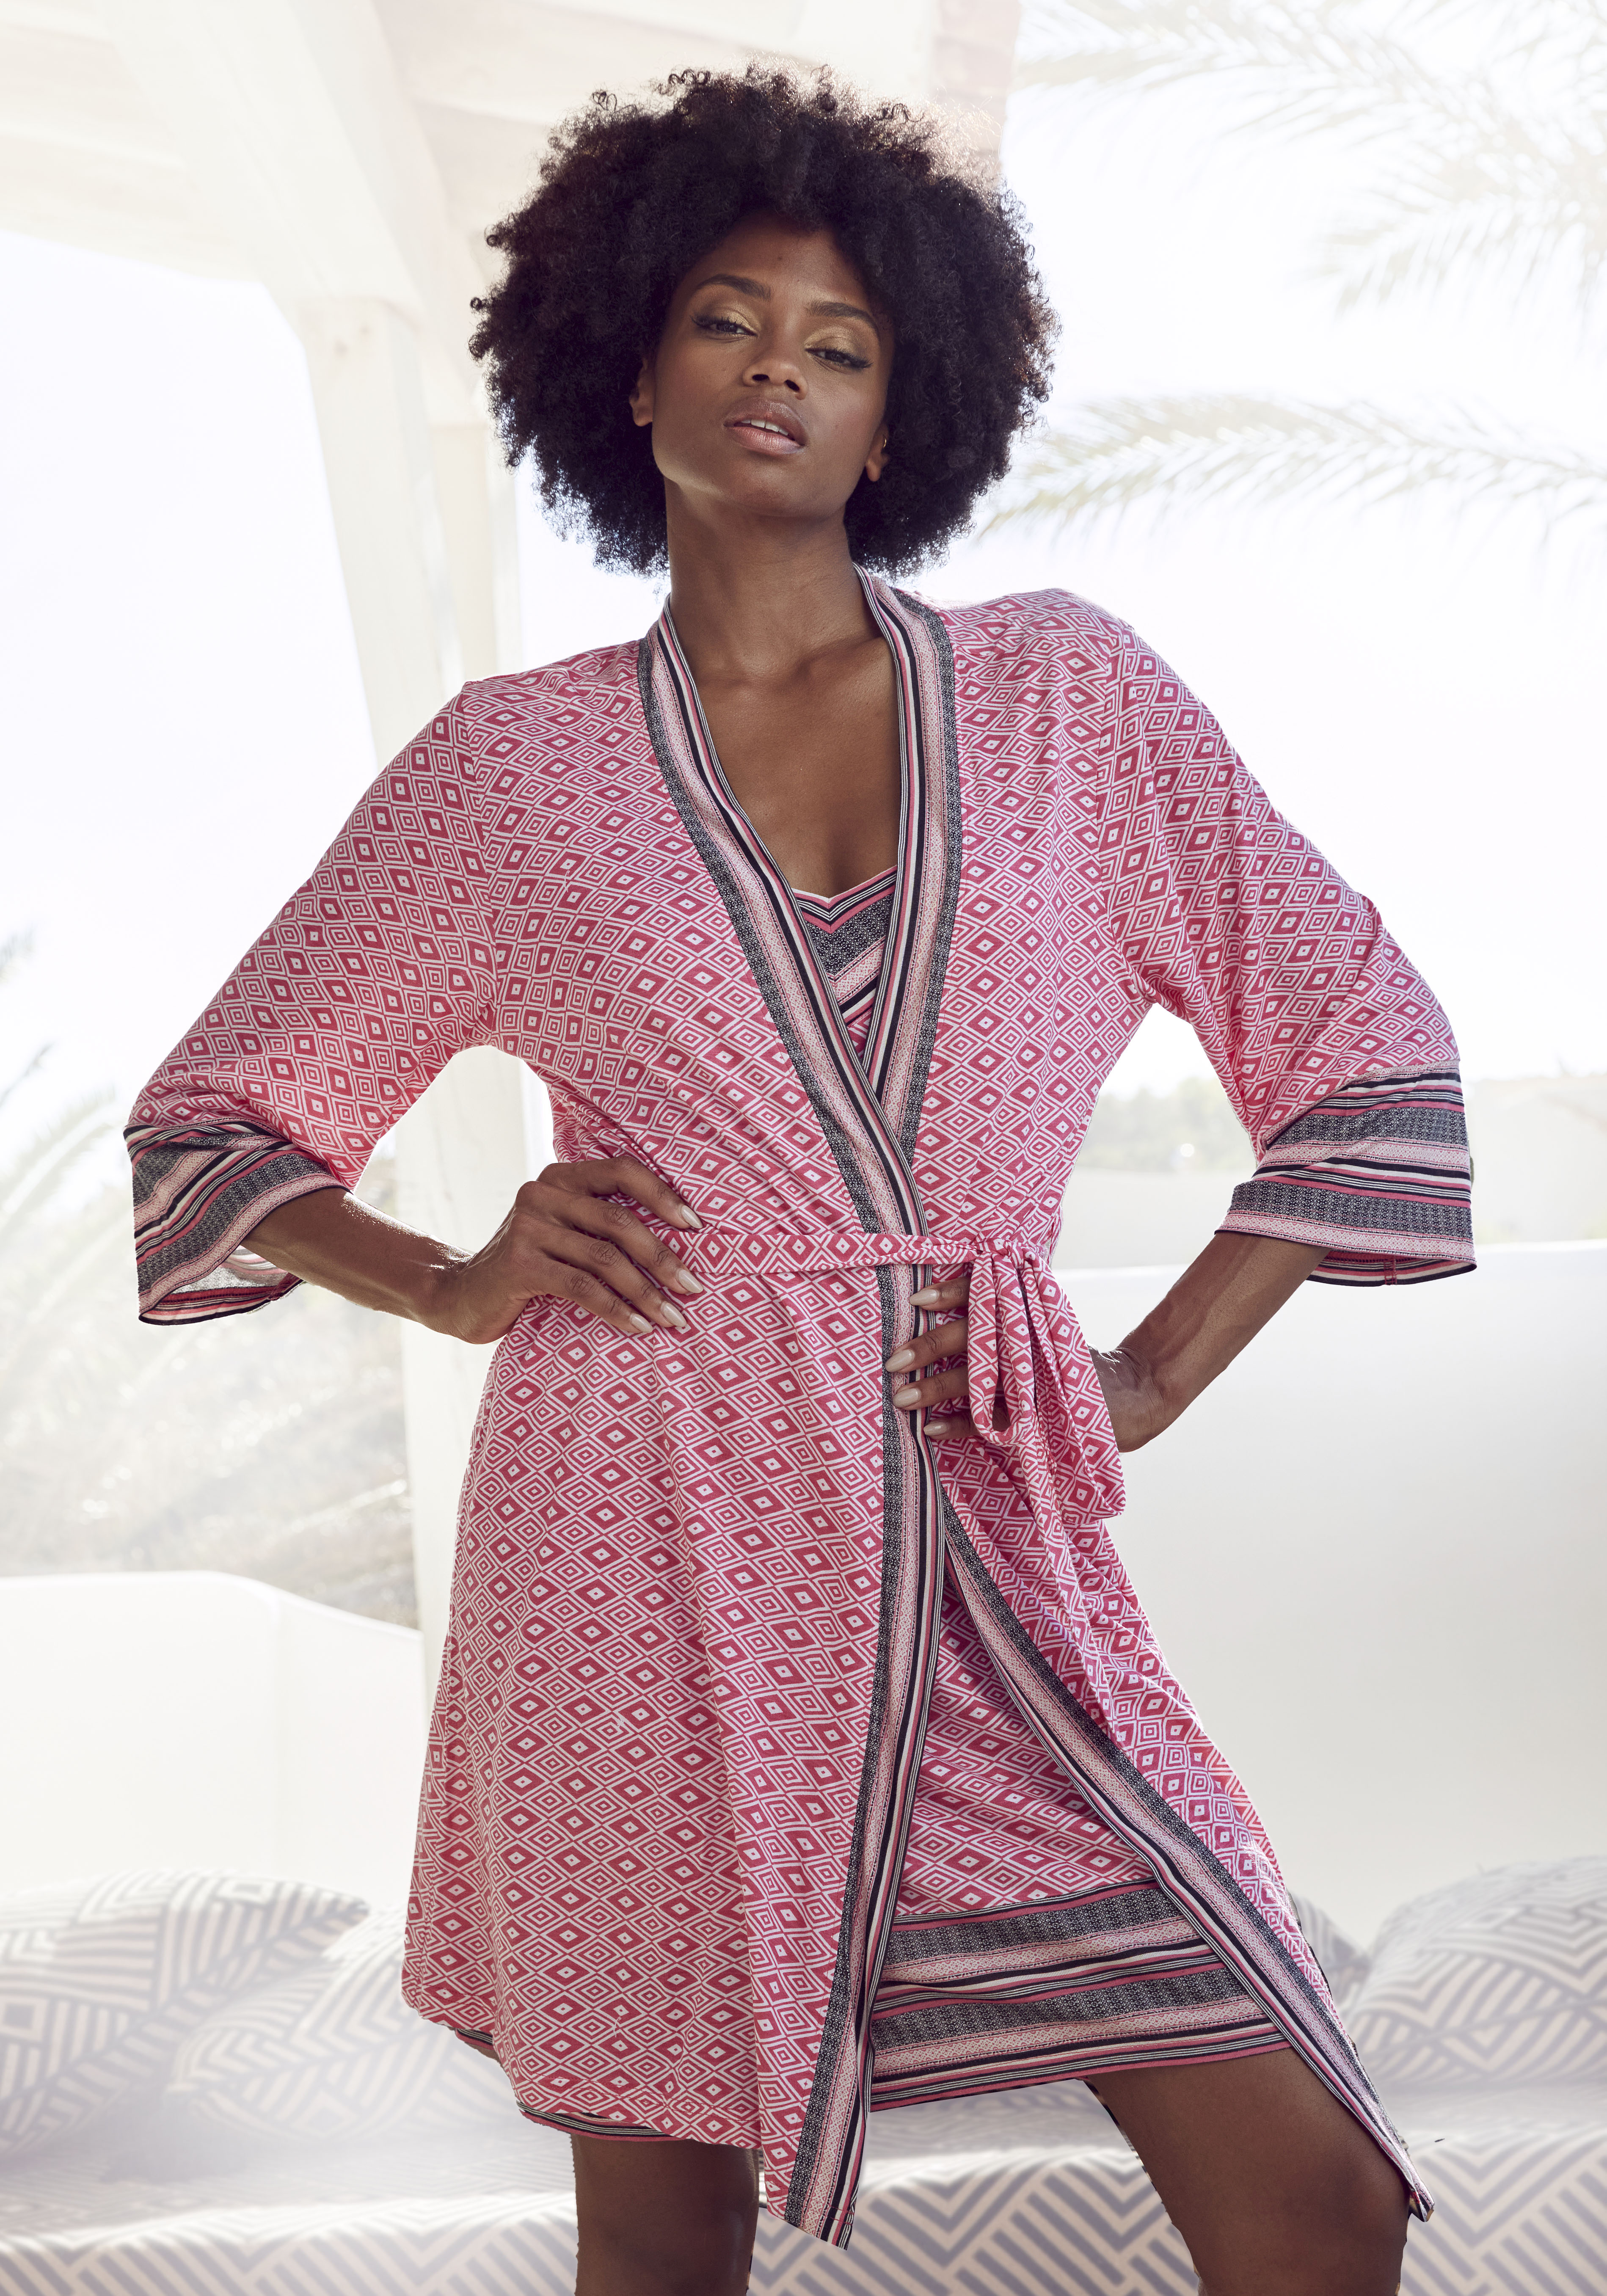 Vivance Dreams Kimono, in schönem Ethno-Design » LASCANA | Bademode,  Unterwäsche & Lingerie online kaufen